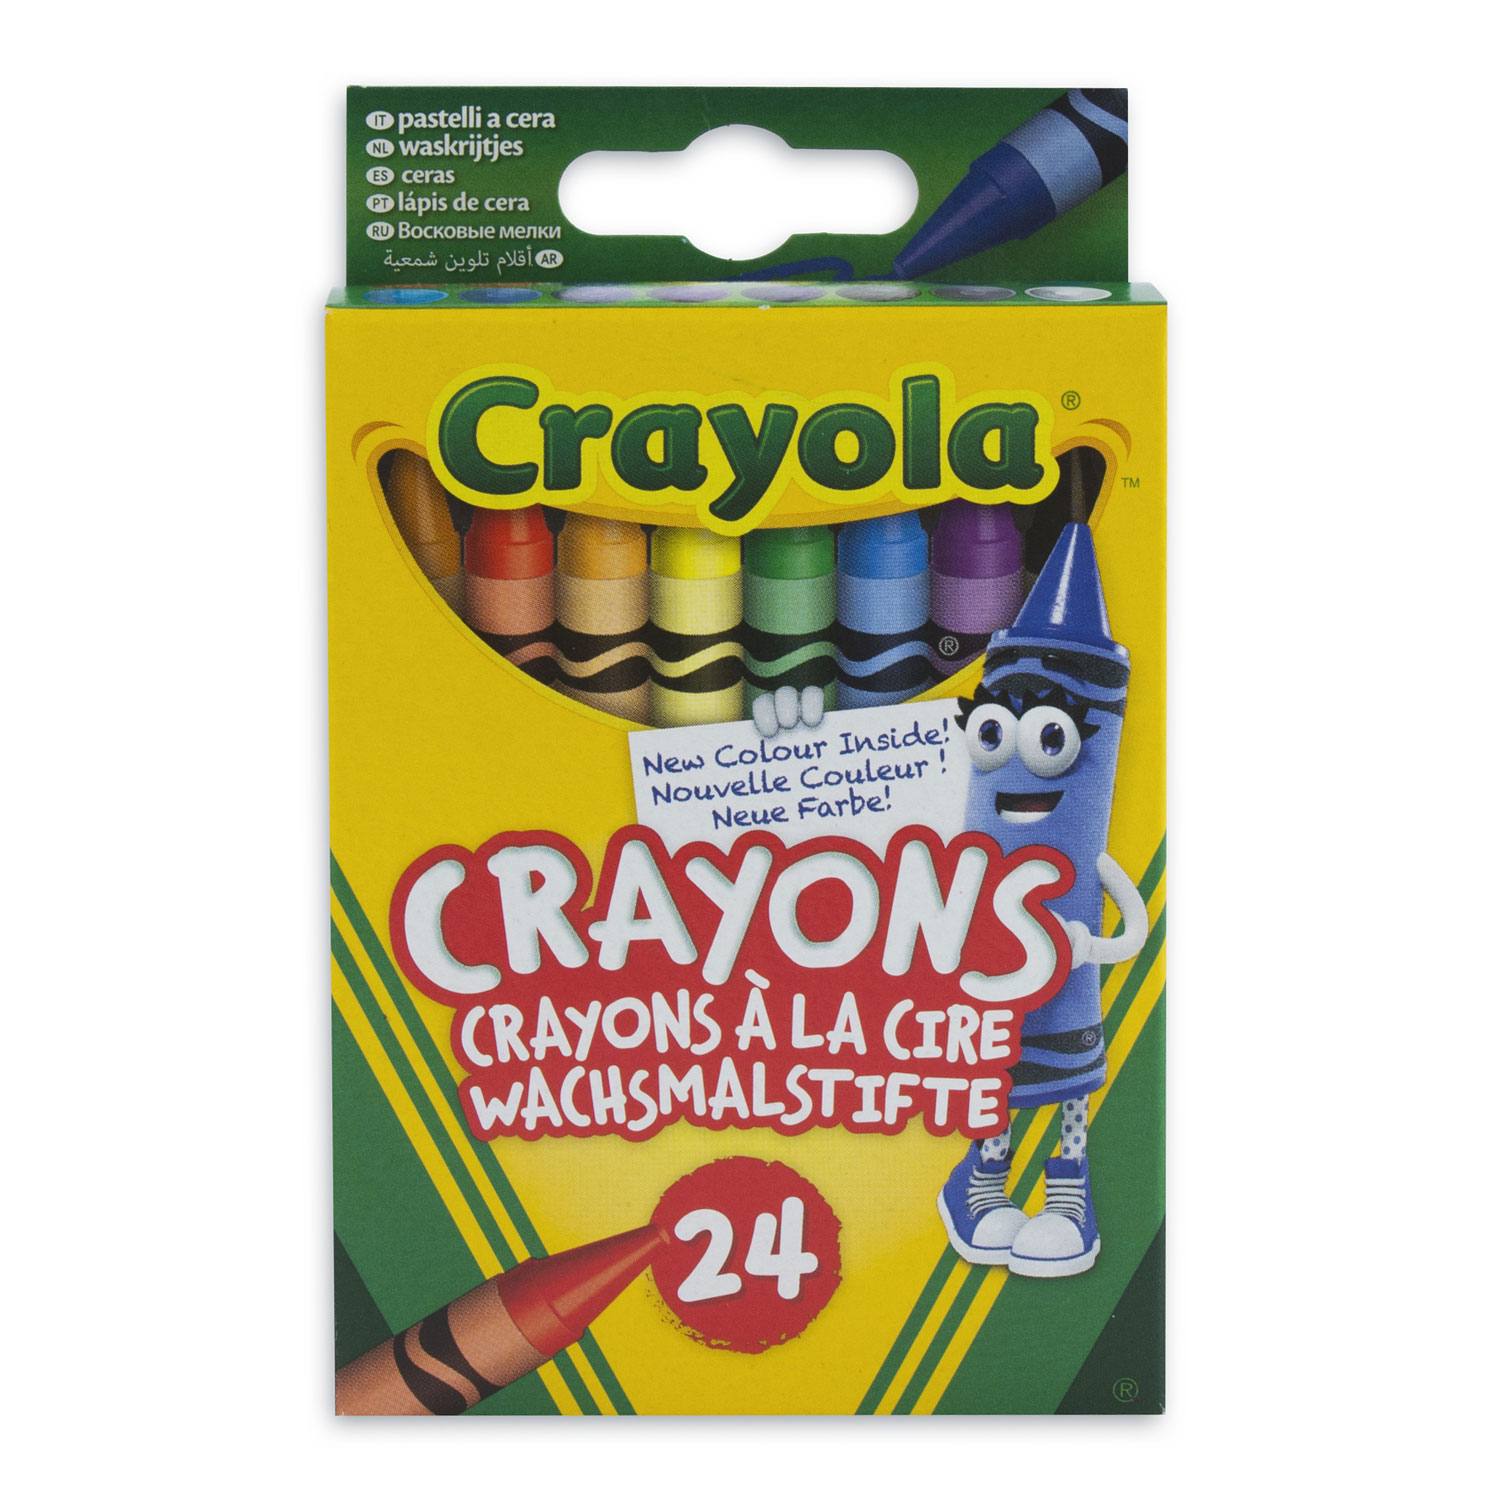 Crayola Wachsmalstifte, 24 Stück.